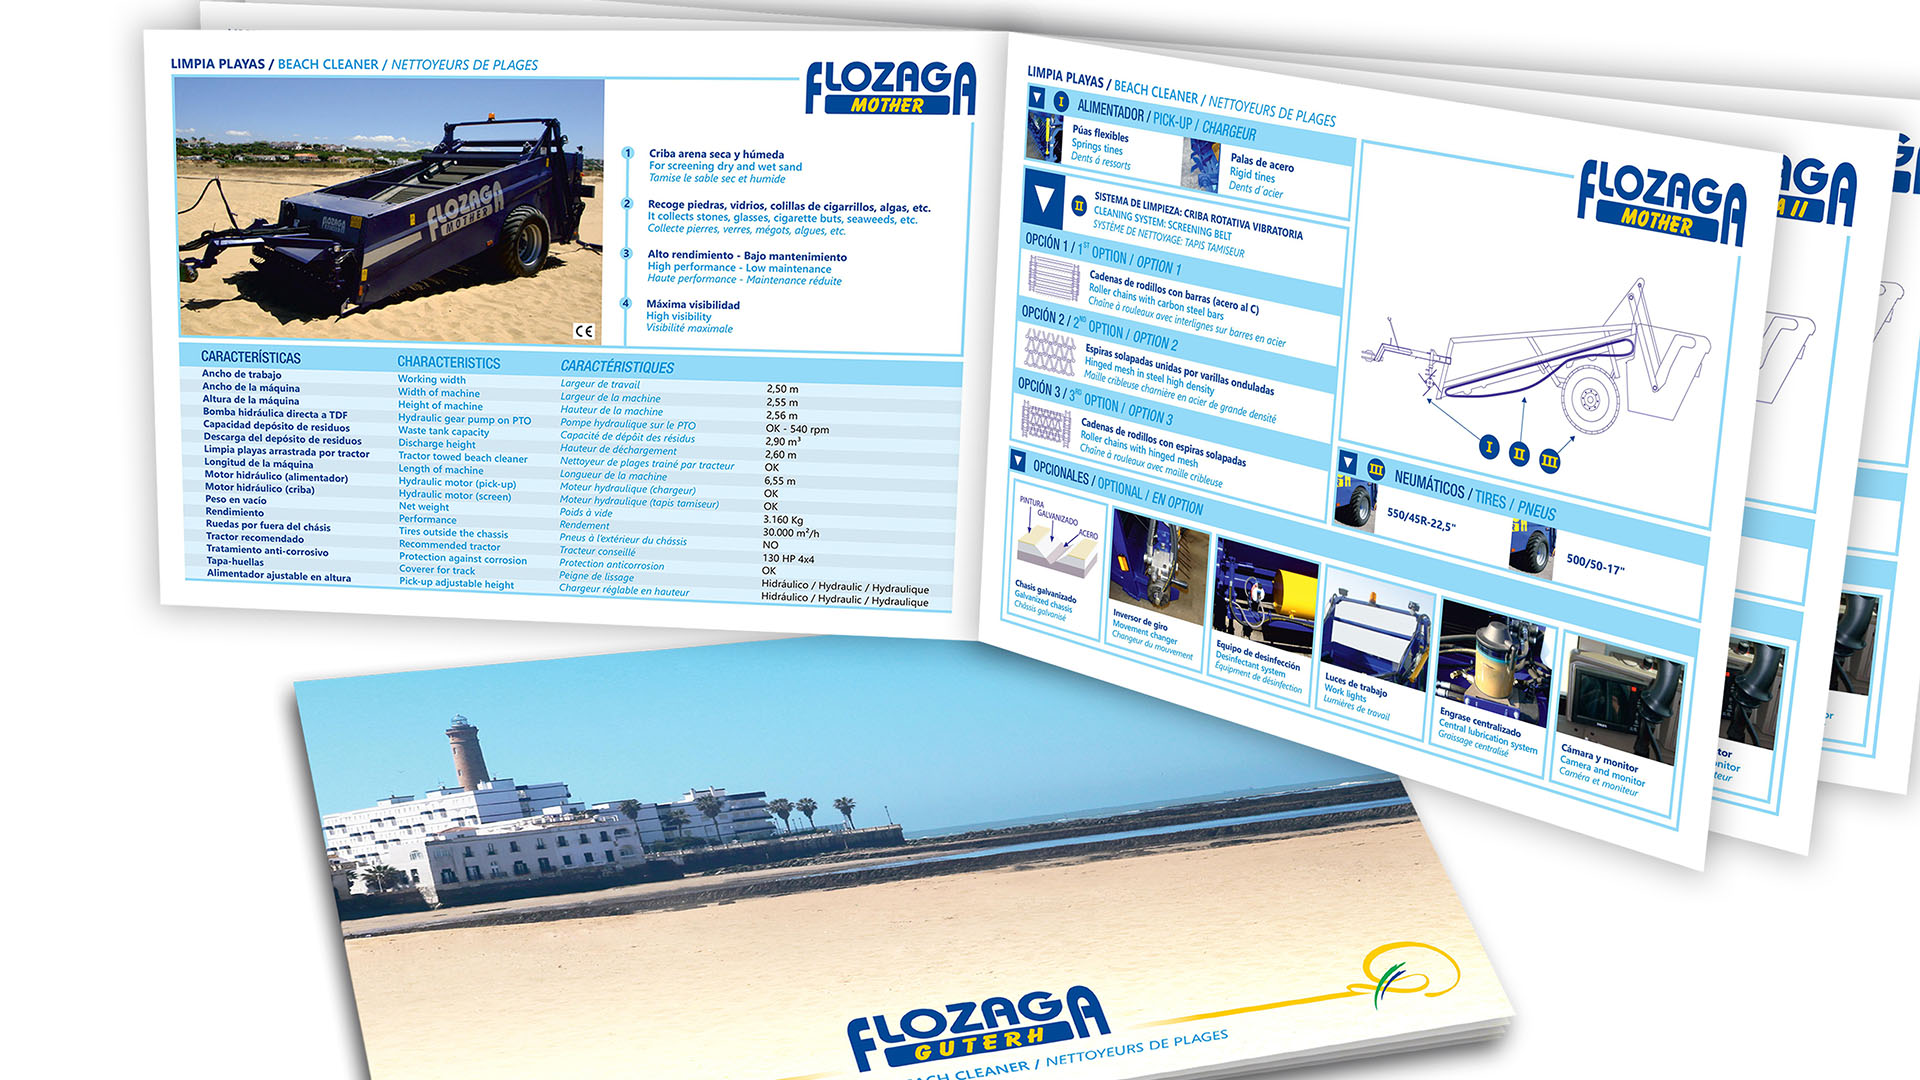 FLOZAGA GUTERH - Catálogo